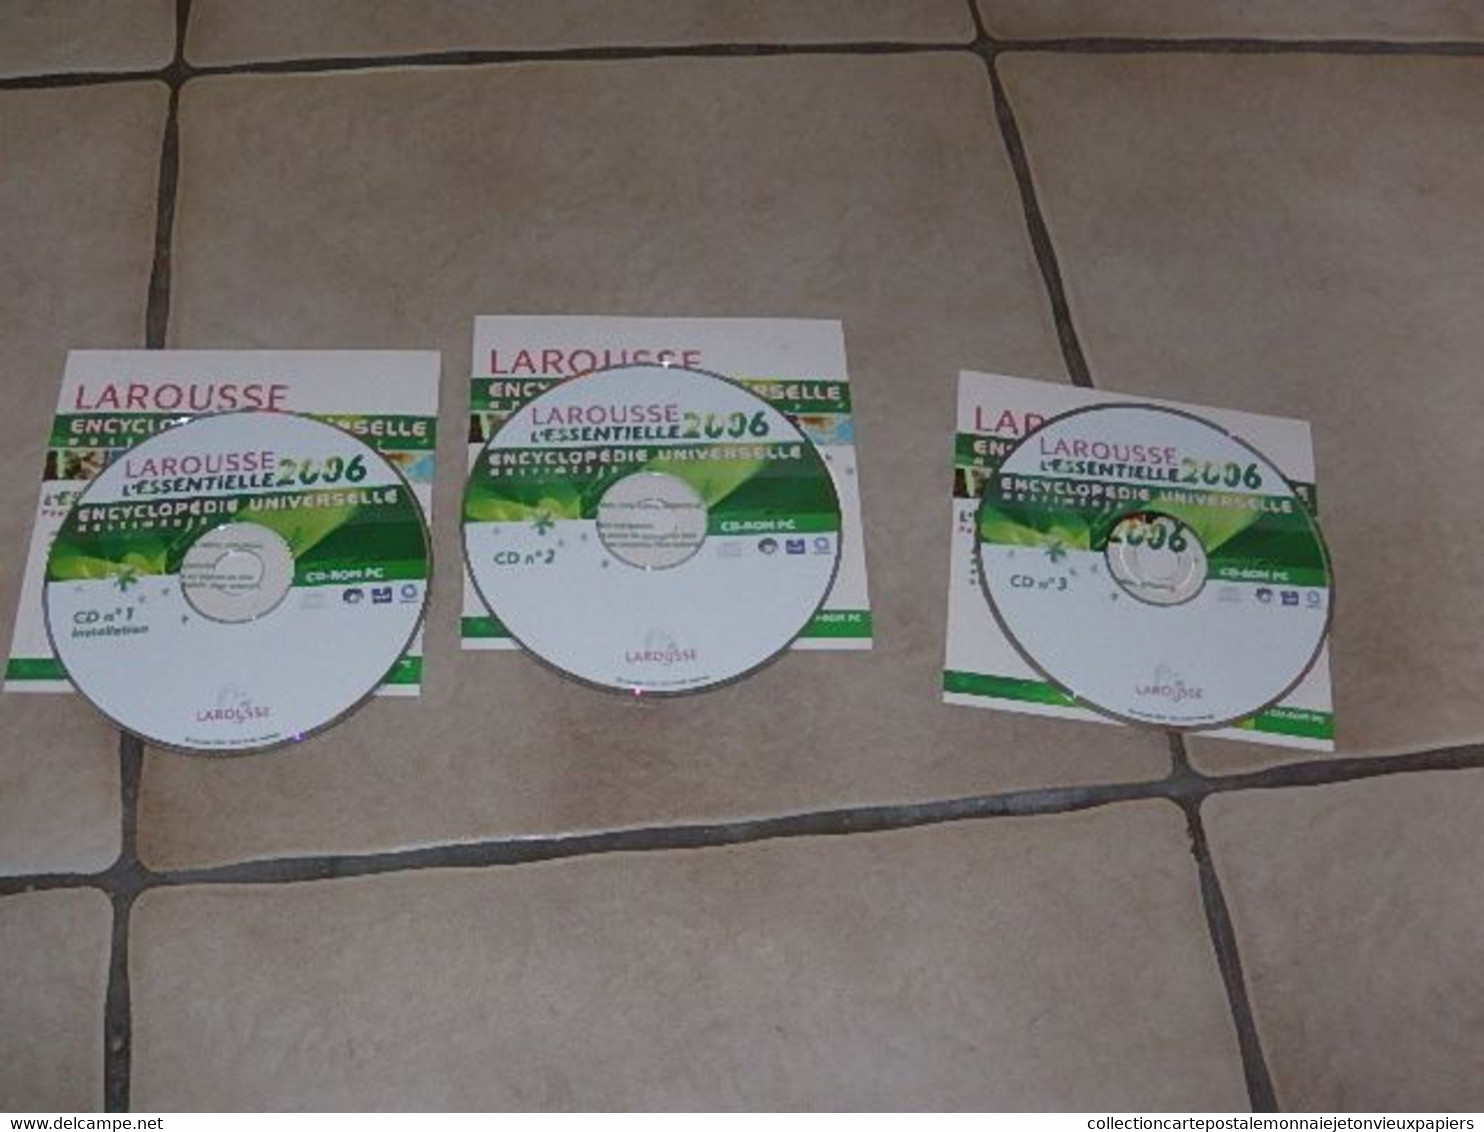 Larousse L'Essentielle 2006 - Encyclopédie/ 3 CD-ROM PC  En L état Sur Les Photos - CD